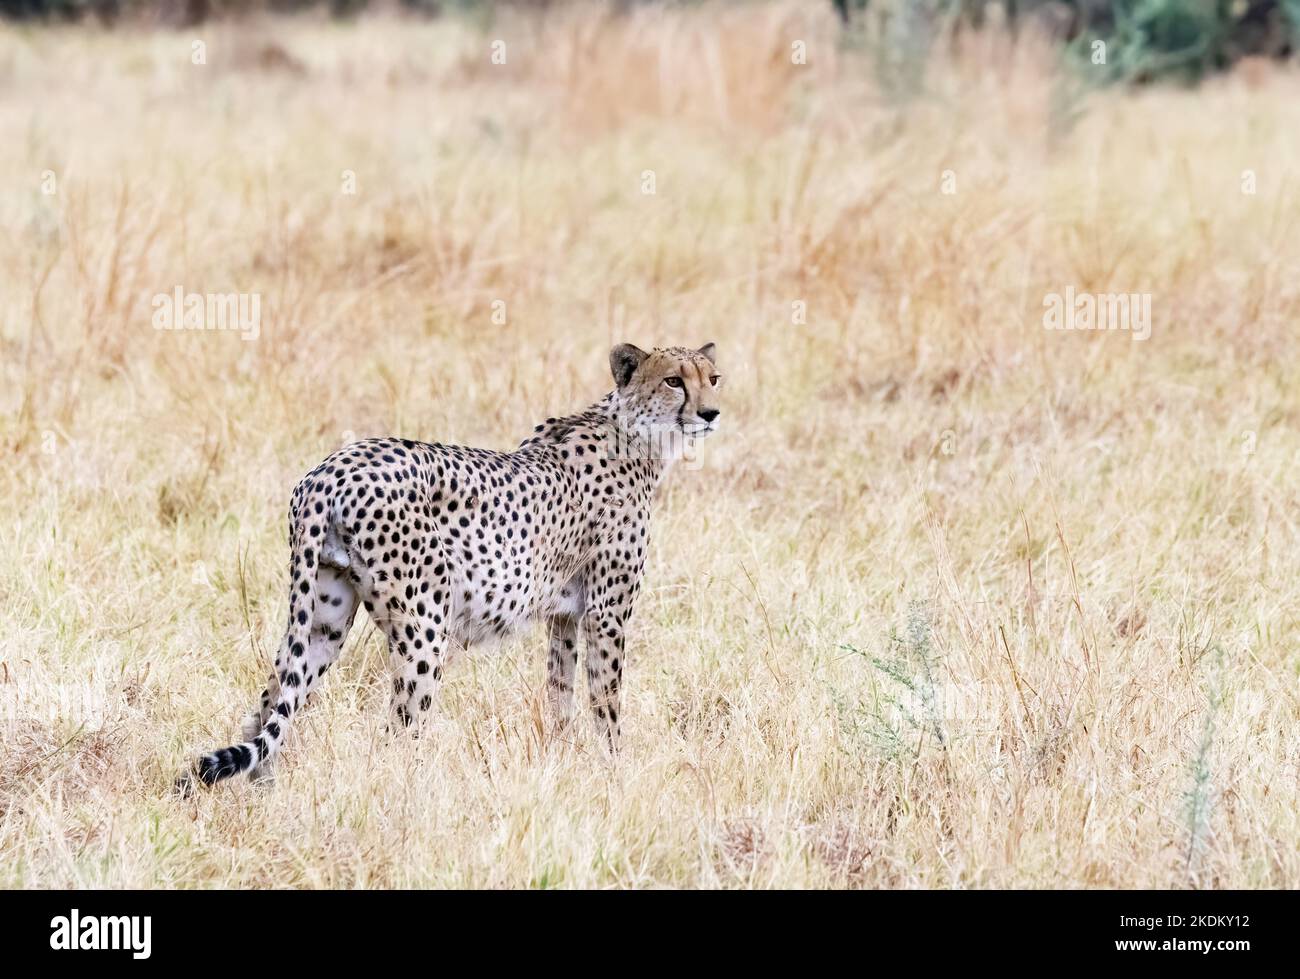 Cheetah Botswana; Cheetah macho adulto silvestre de pie en pastizales, Acinonyx jubatus, Parque Nacional Chobe, Botswana África. Animal en peligro de extinción. Cat. Grande Foto de stock